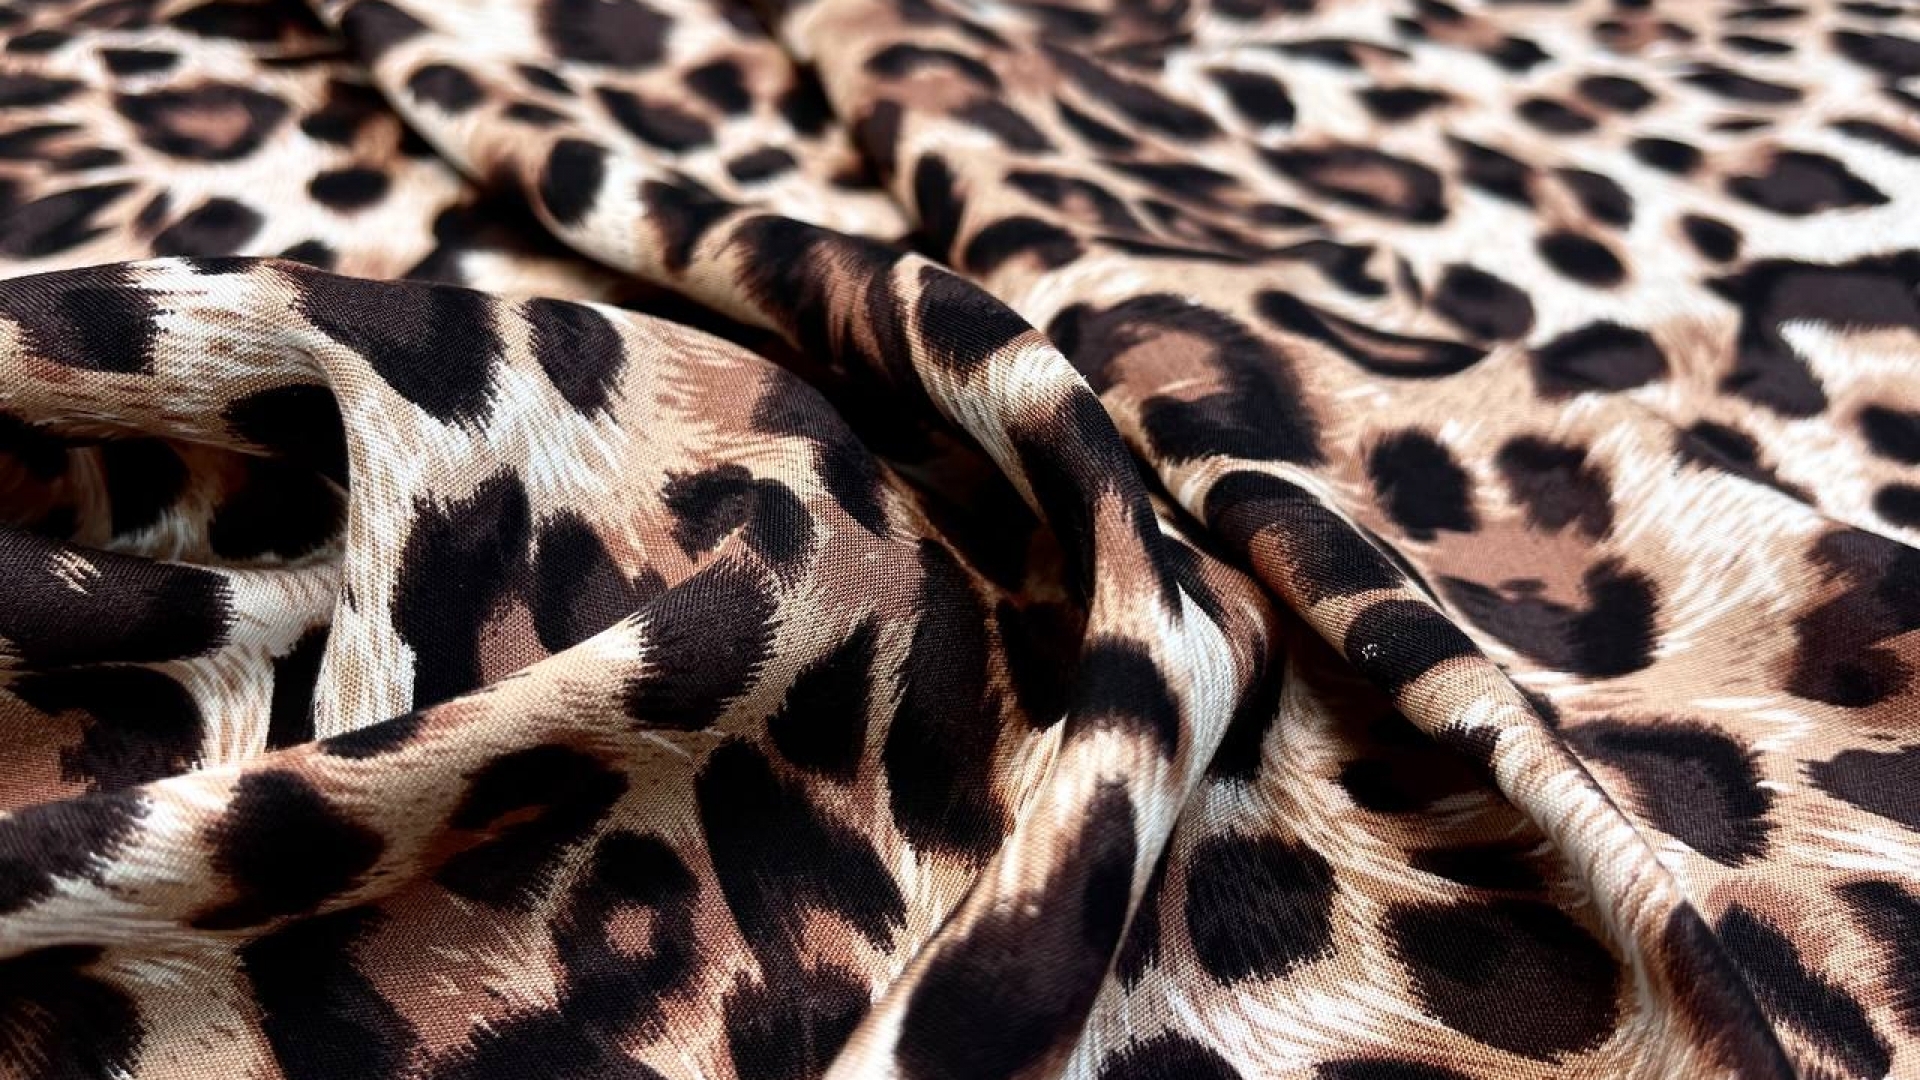 Вискозный штапель с леопардовым принтом в коричневой гамме. Идеален для летних свободных платьев, рубашек и топов.